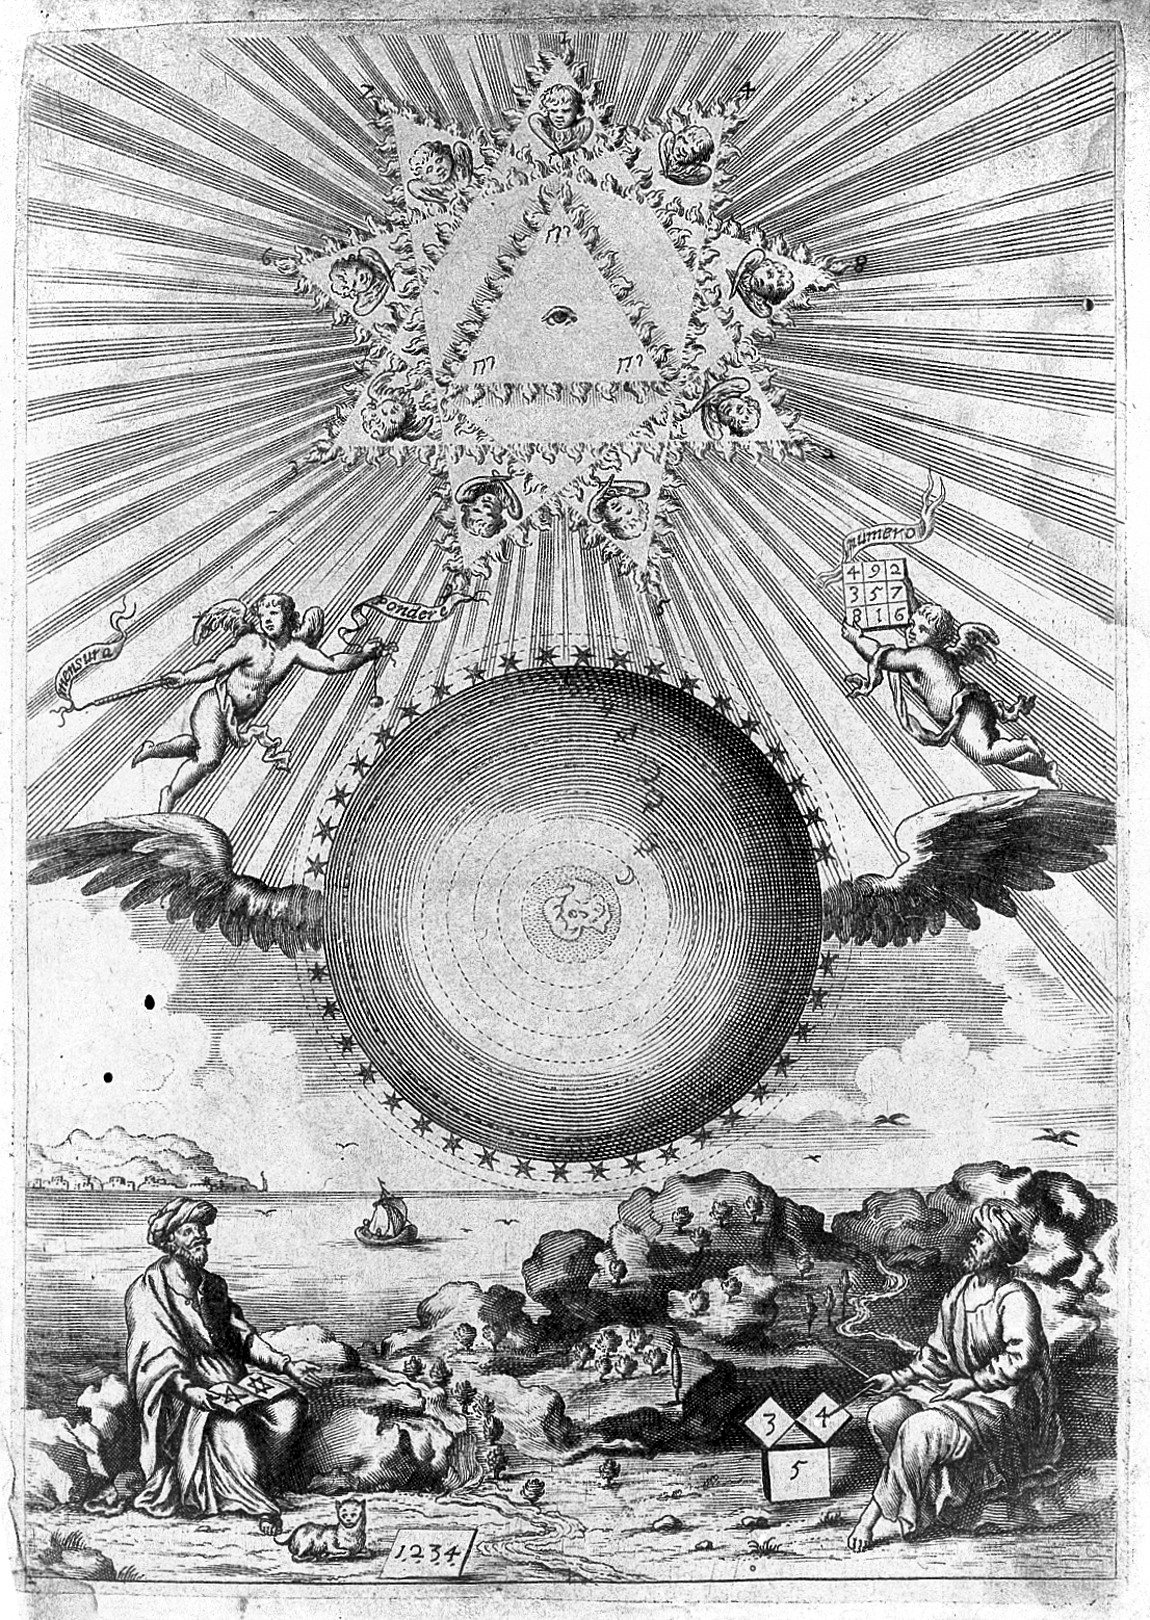 24. Челната страница на „Аритмология“ на А. Кирхер, 1665 г.
https://en.wikipedia.org/wiki/Arithmologia